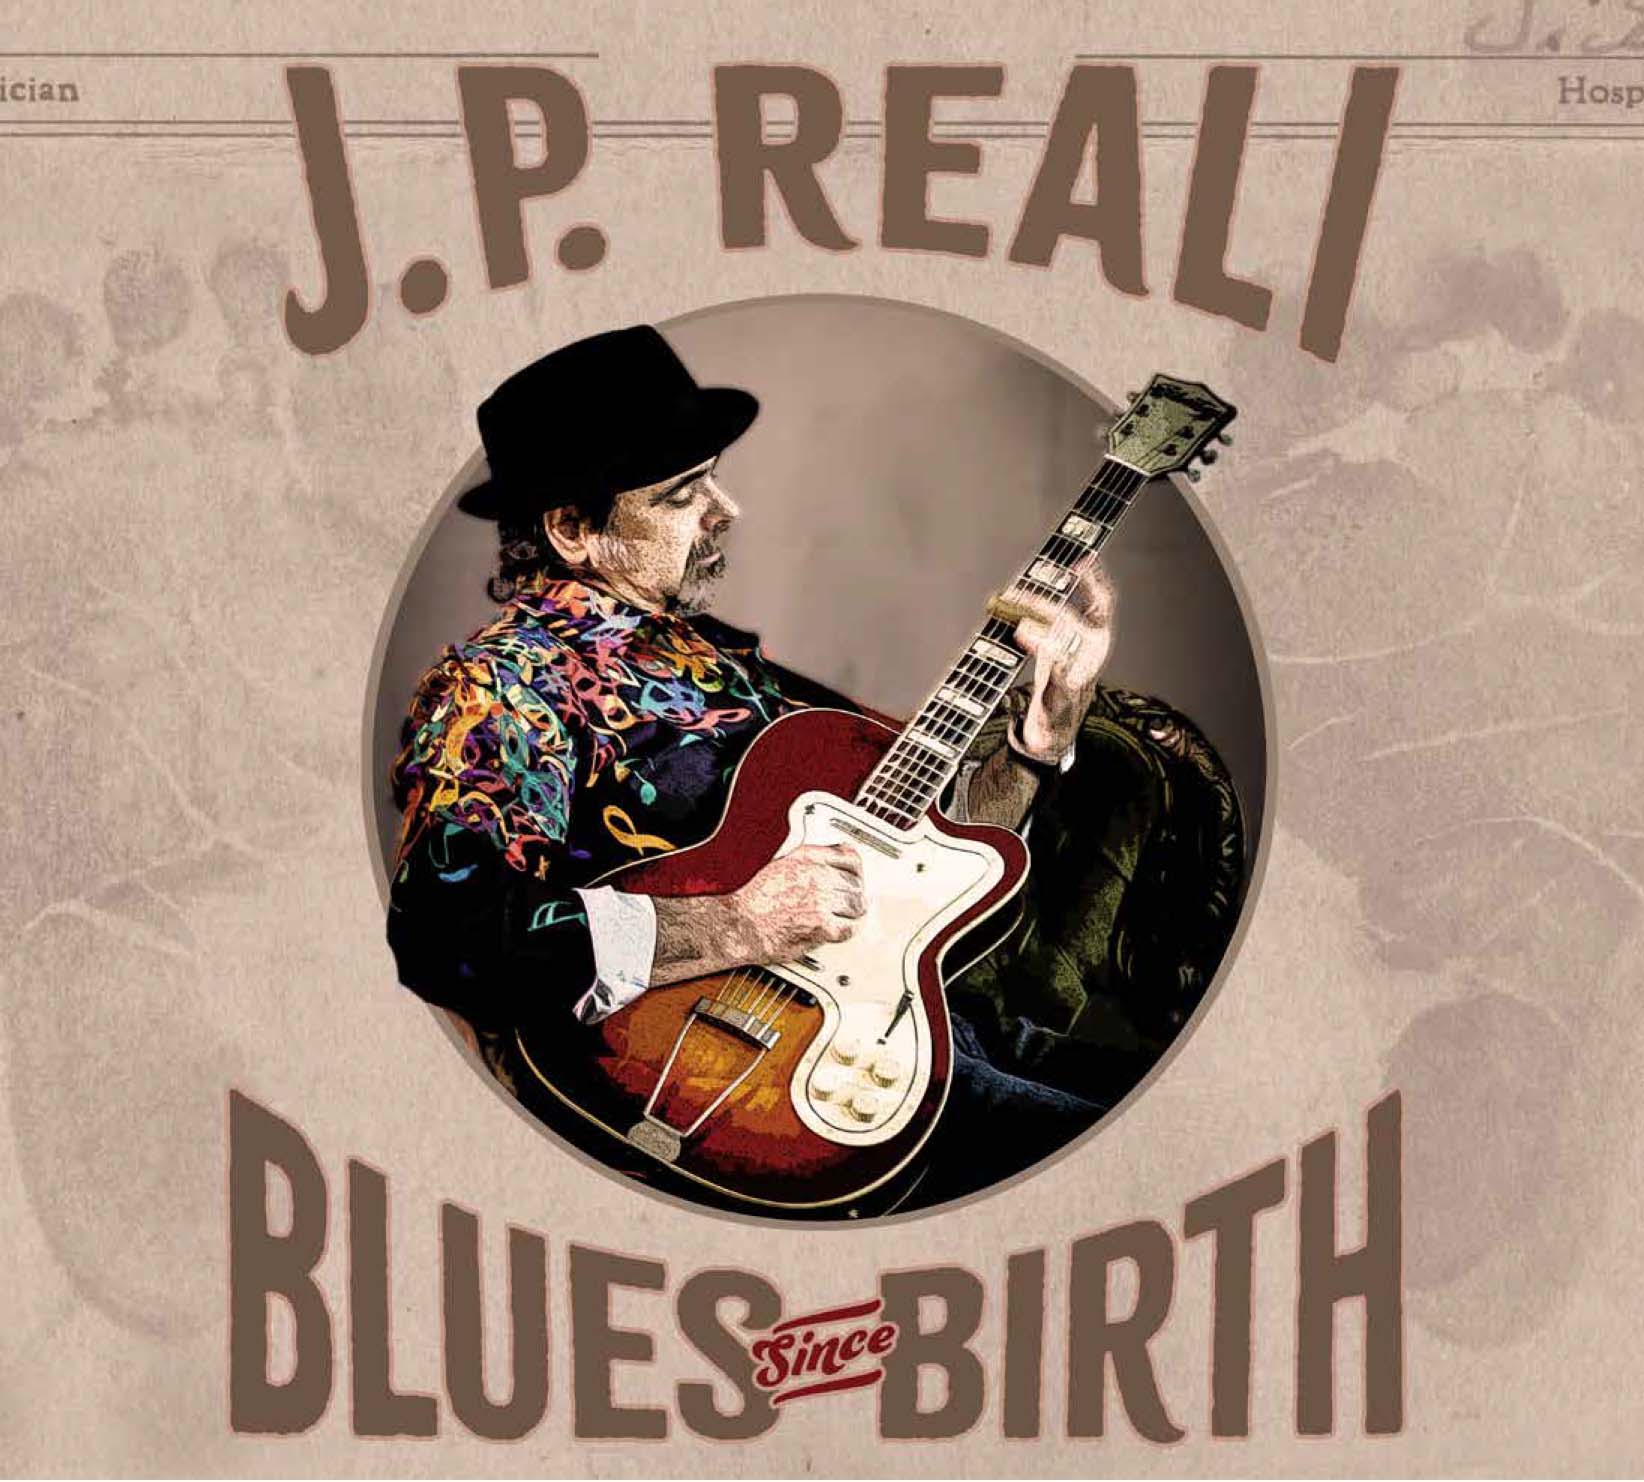 JP <br>
Reali Blues Since Birth